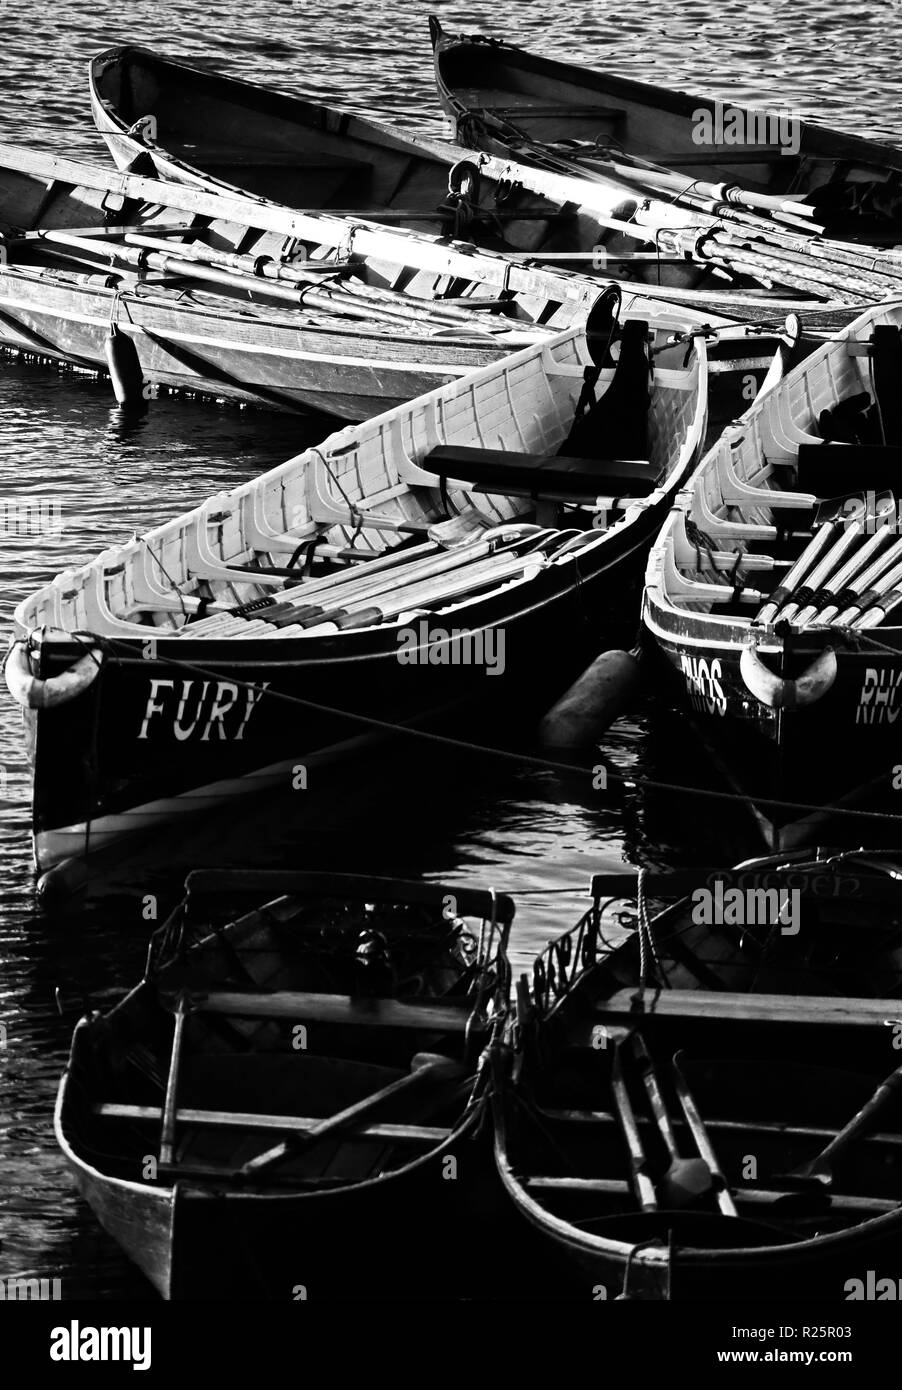 Une image abstraite qui décrit une sélection de concerts de Cornouailles et d'autres barques amarrés sur la Tamise à Richmond upon Thames, Angleterre Banque D'Images